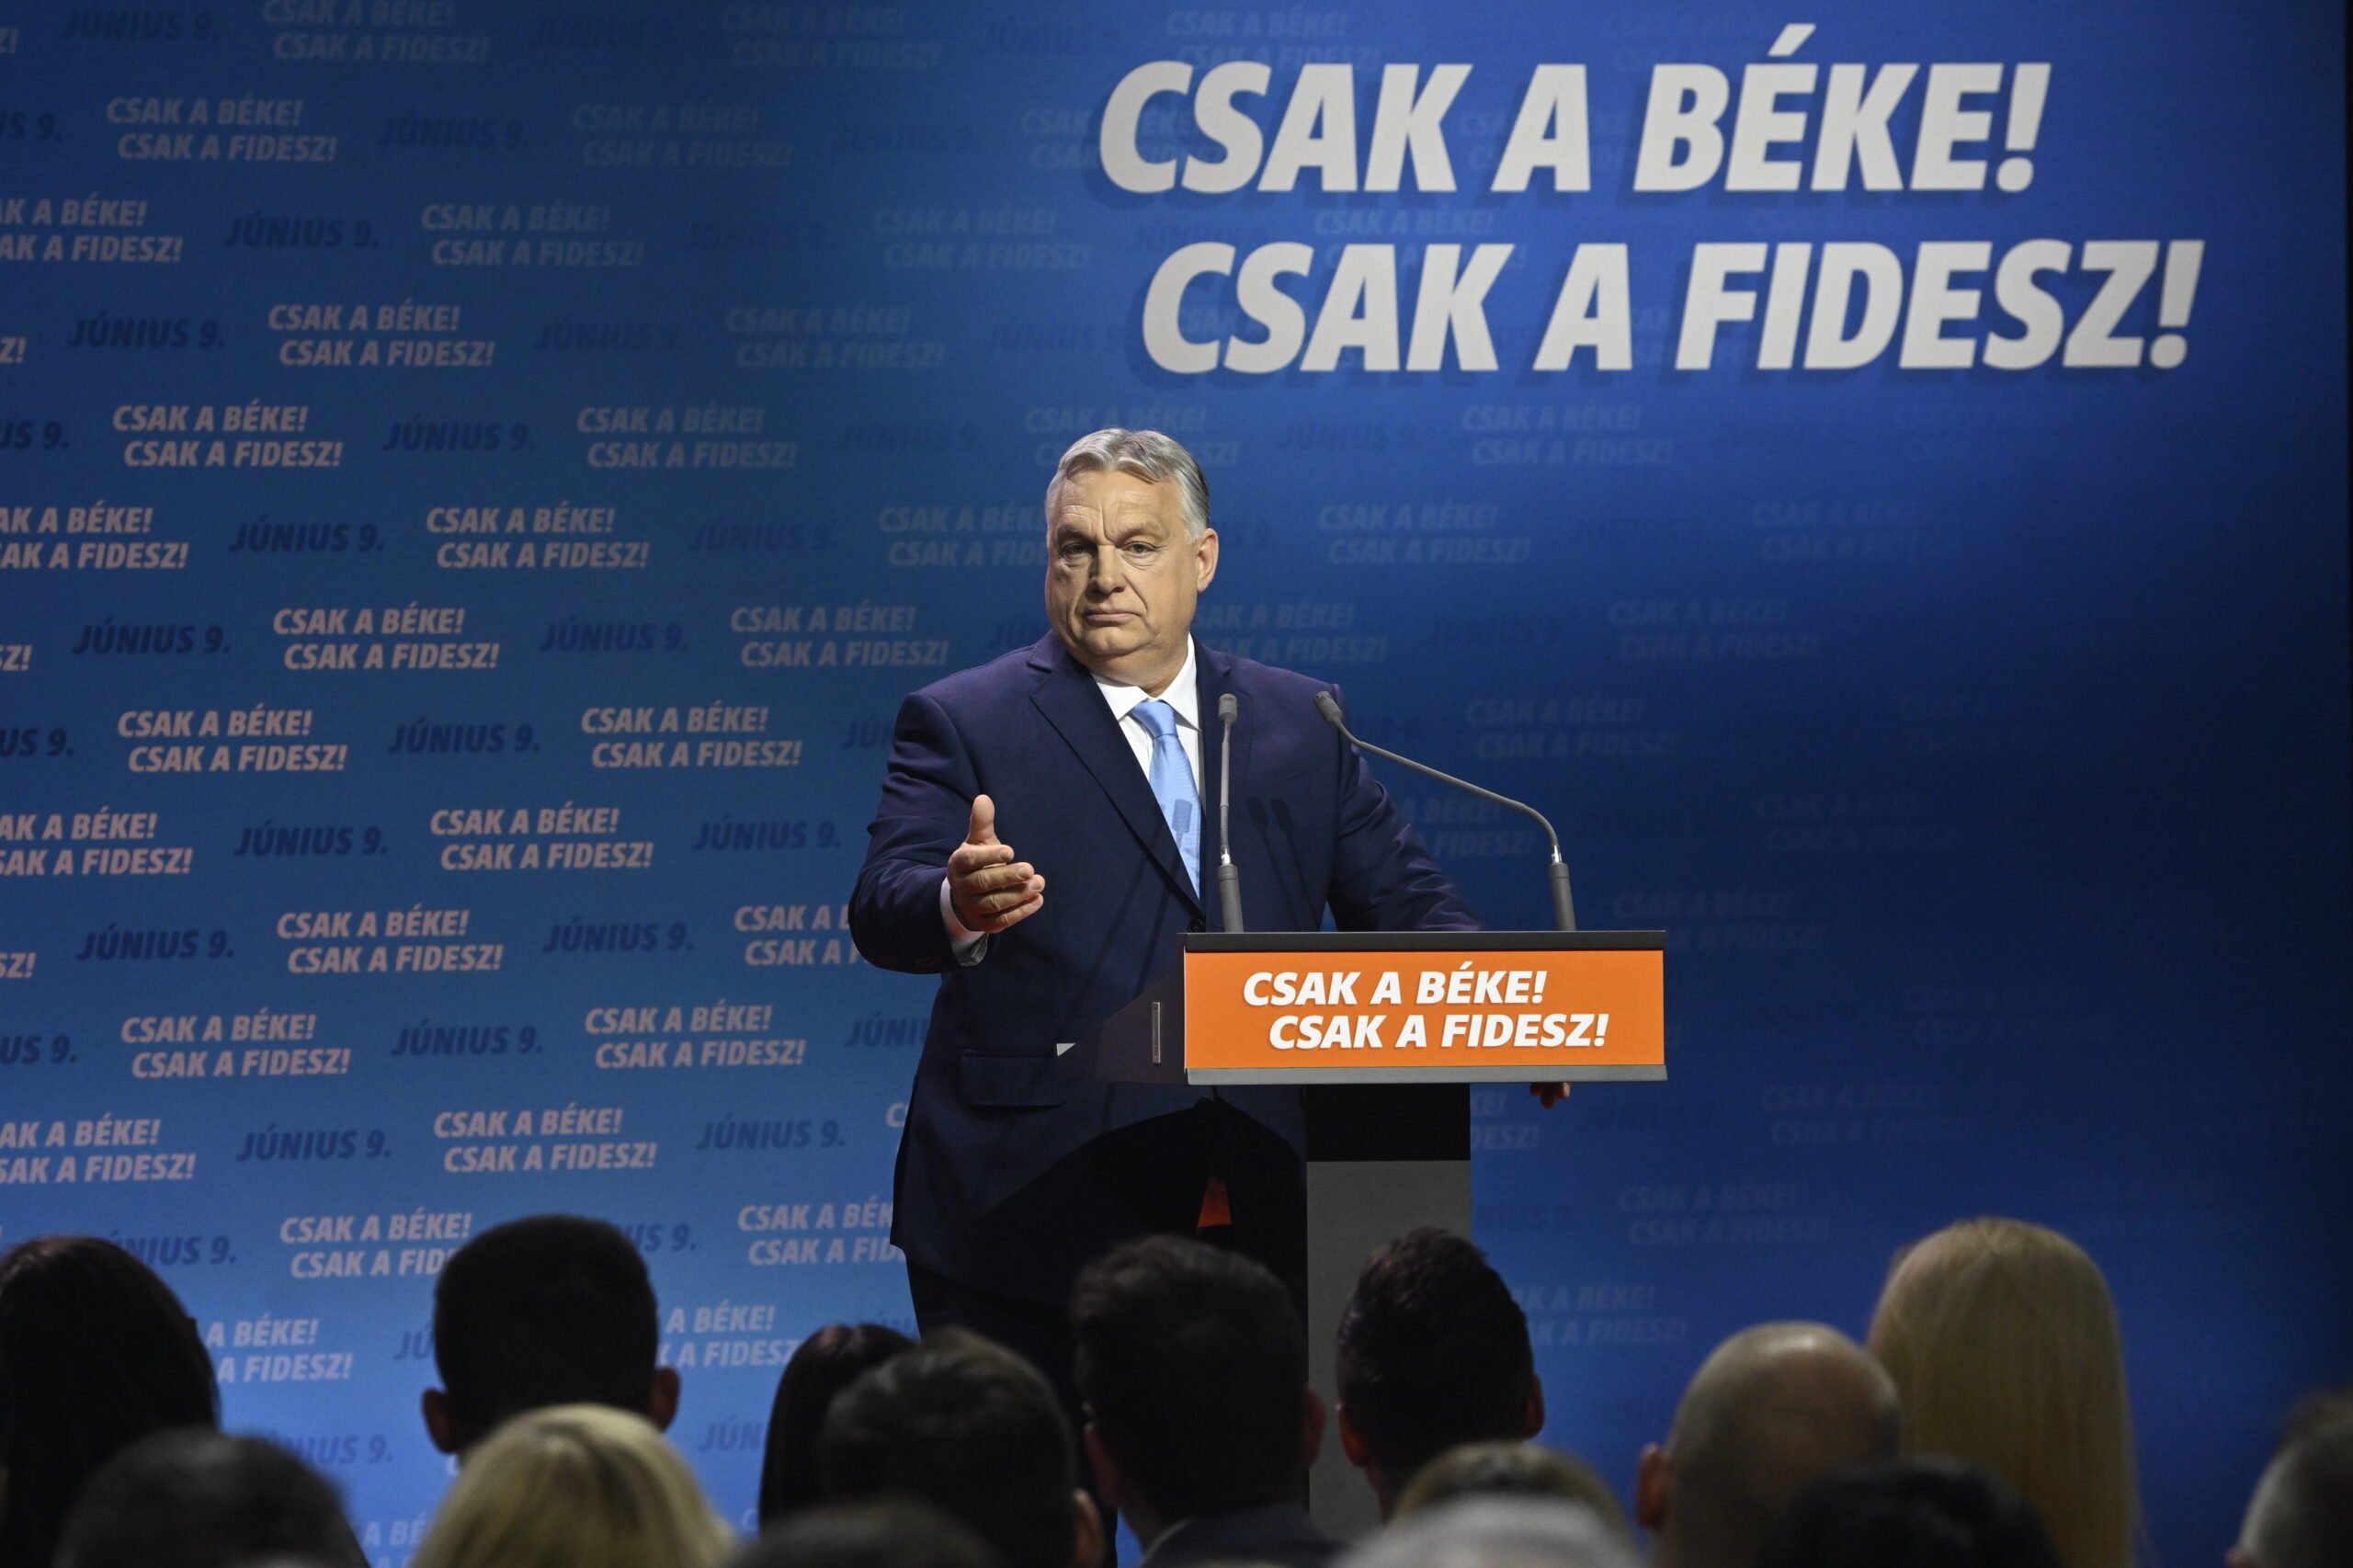 Először szólalt meg Orbán Viktor Magyar Péterről: a baloldal belügye, majd maguk között elrendezik